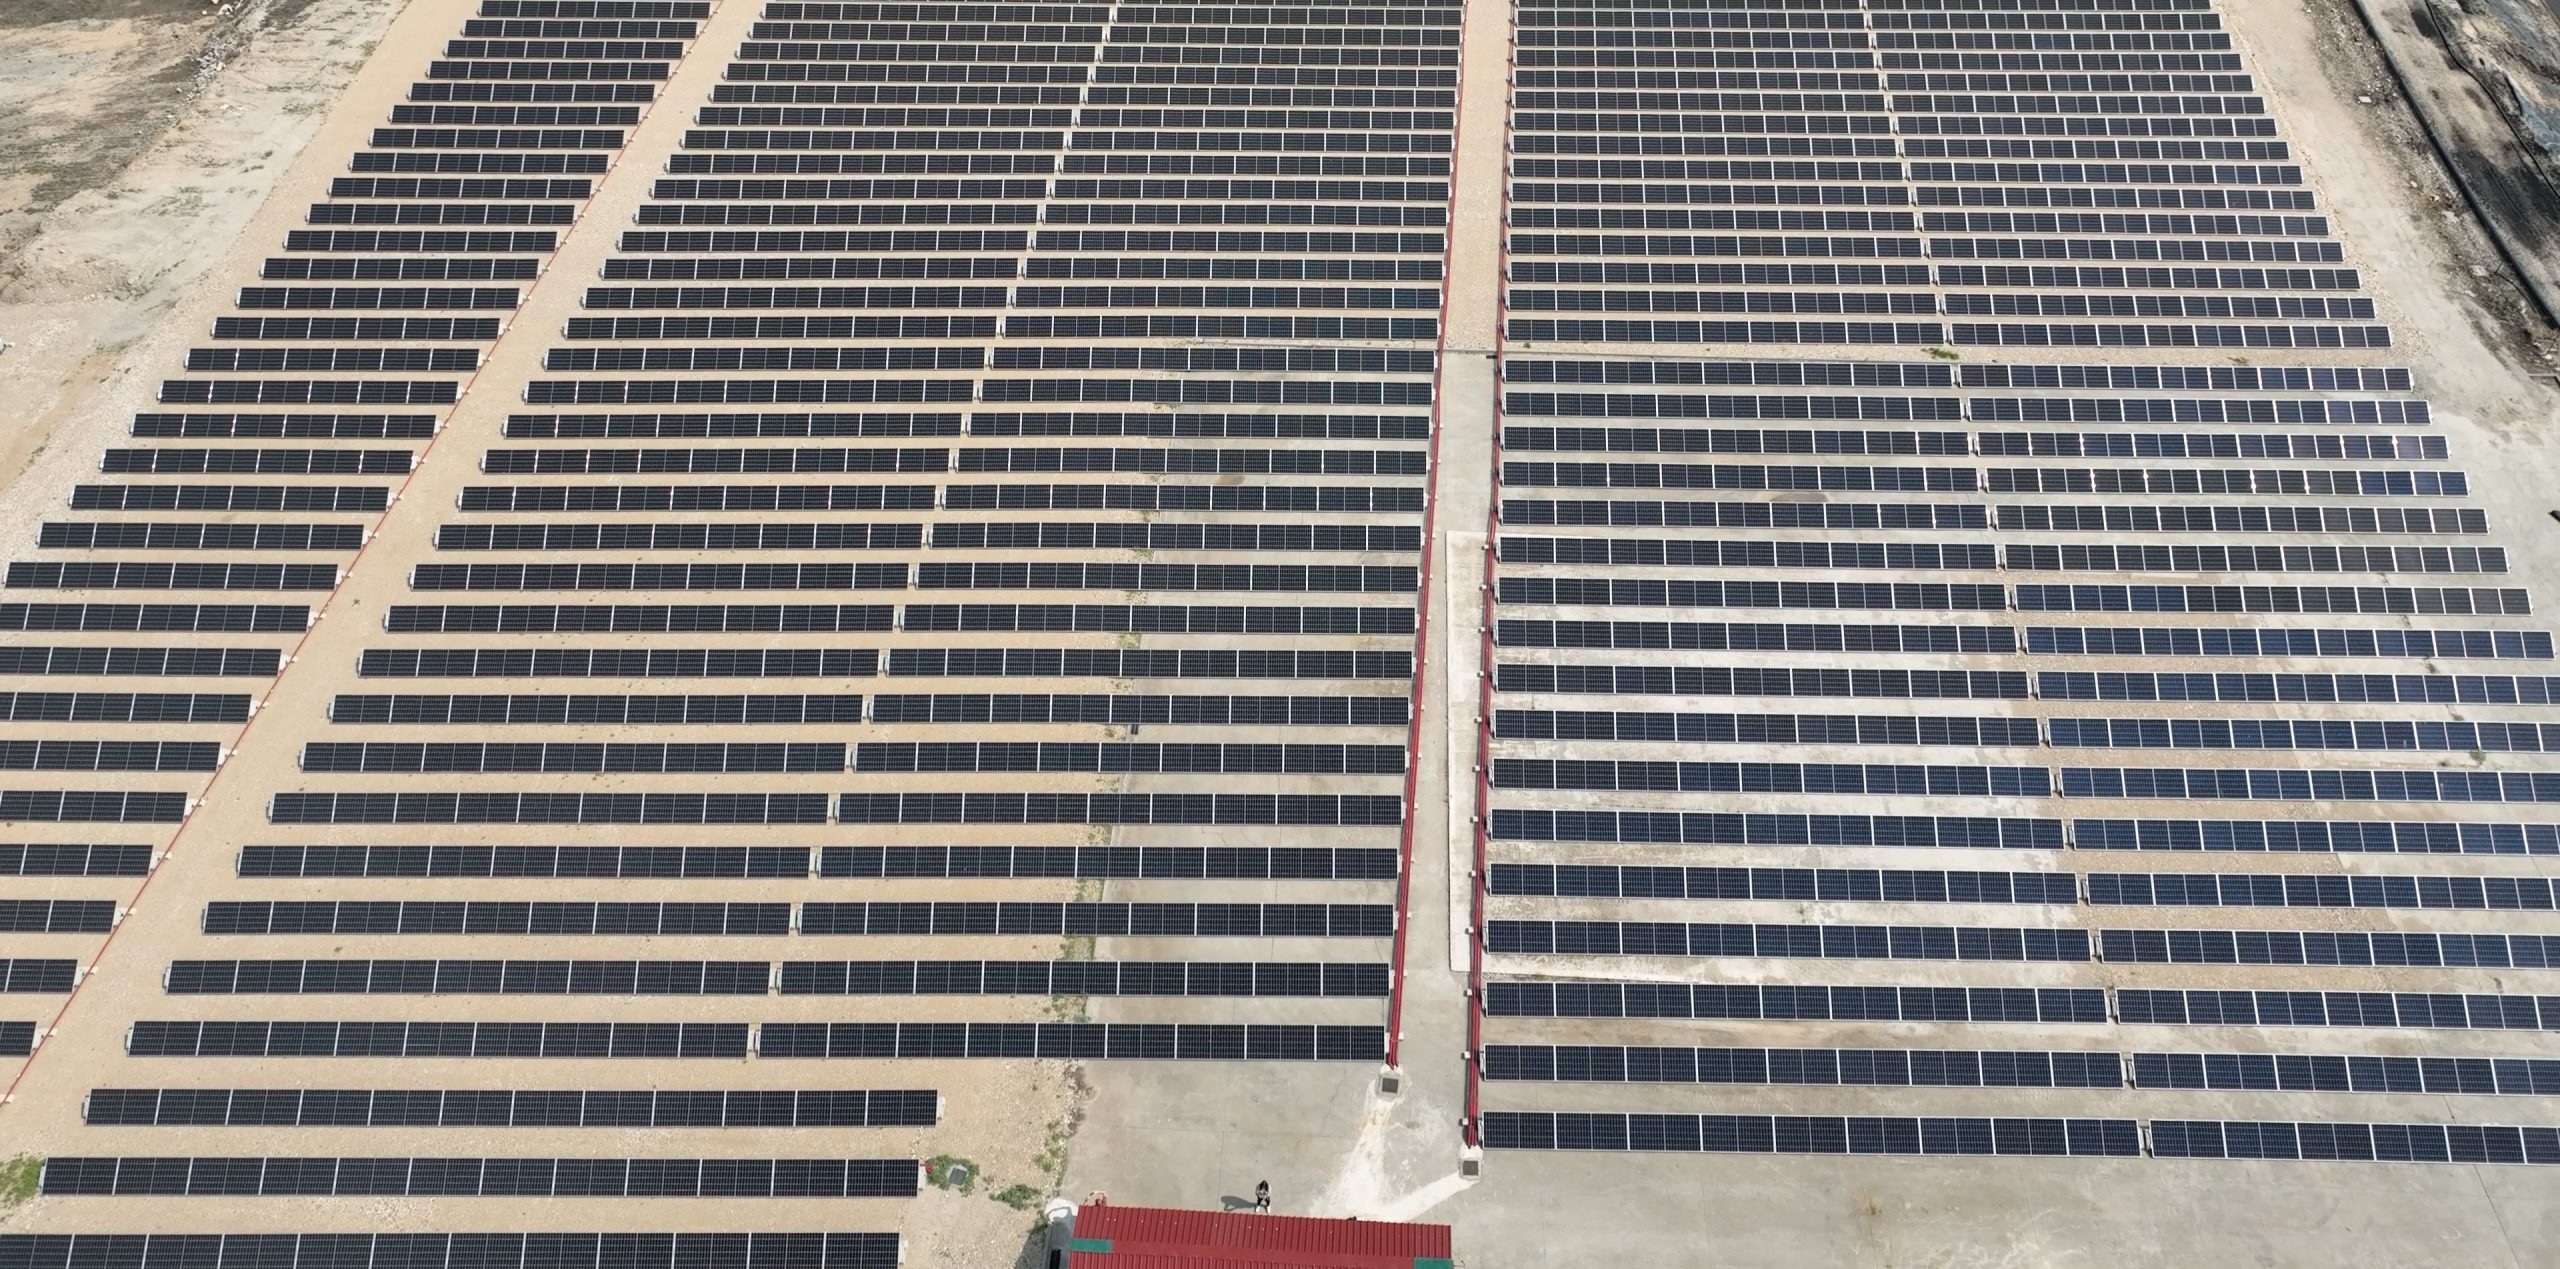 Acesur acomete una instalación fotovoltaica para la reducción de emisiones